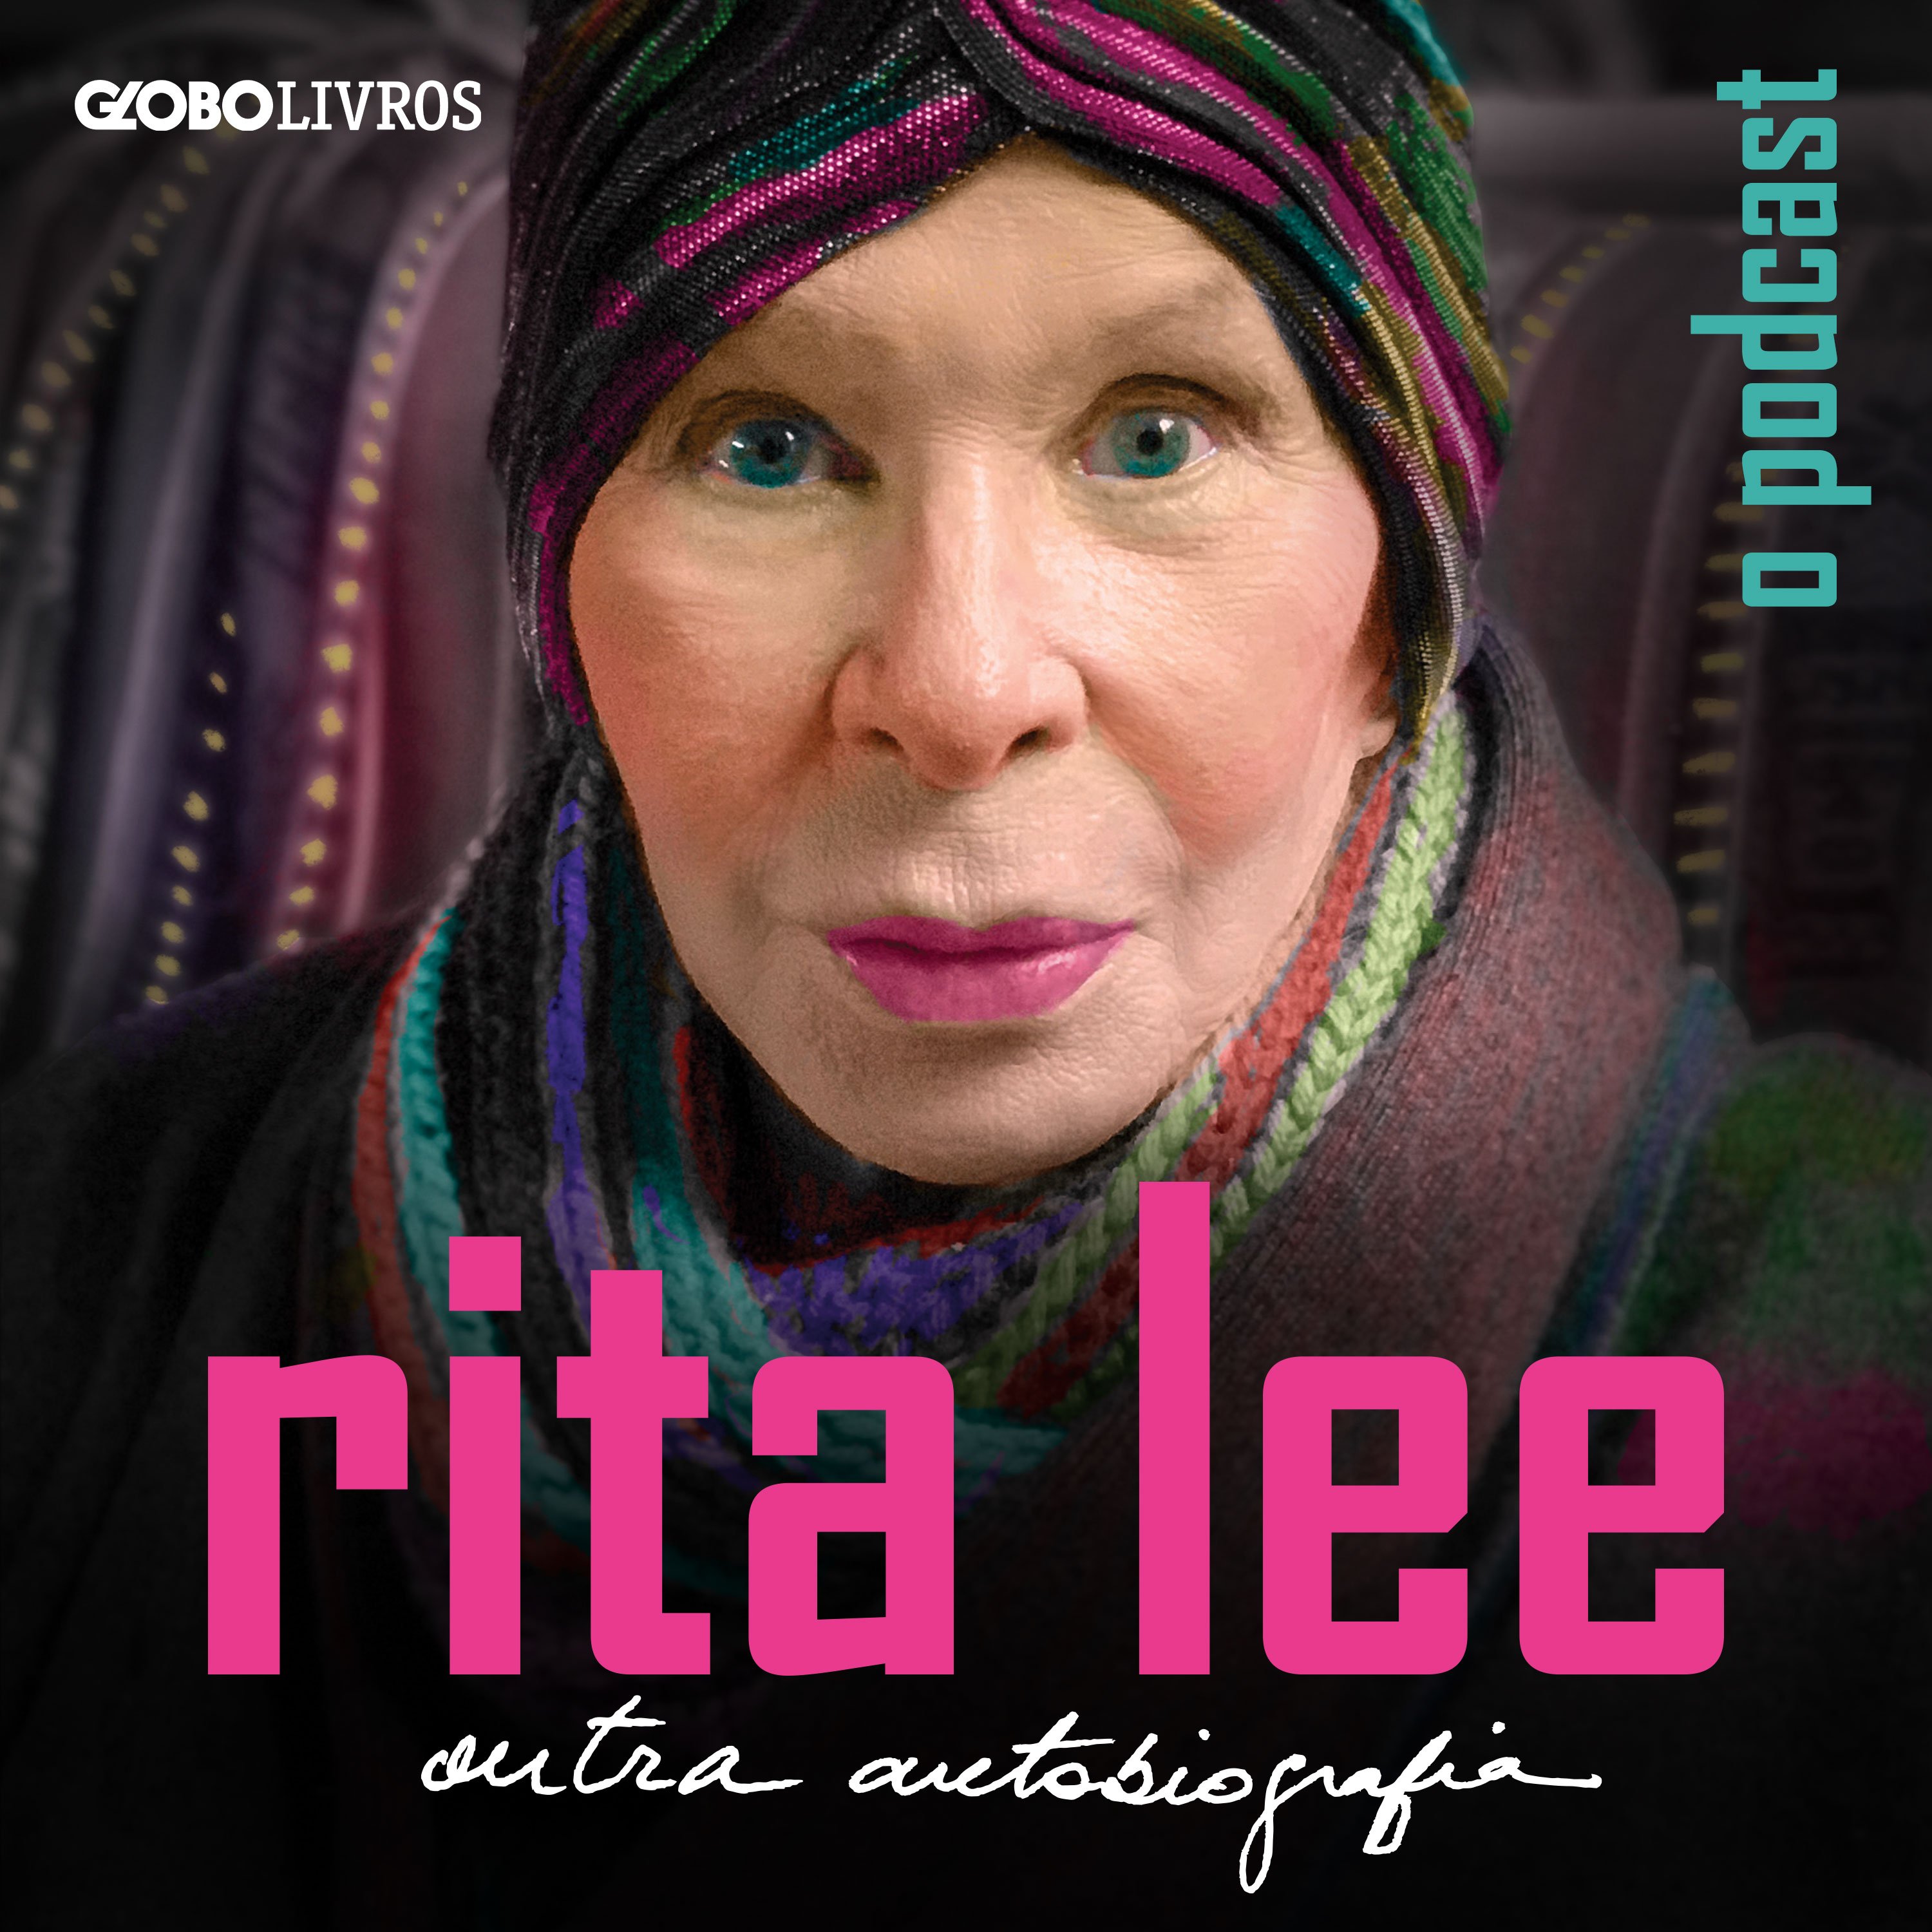 Rita Lee: Outra Autobiografia - O Podcast